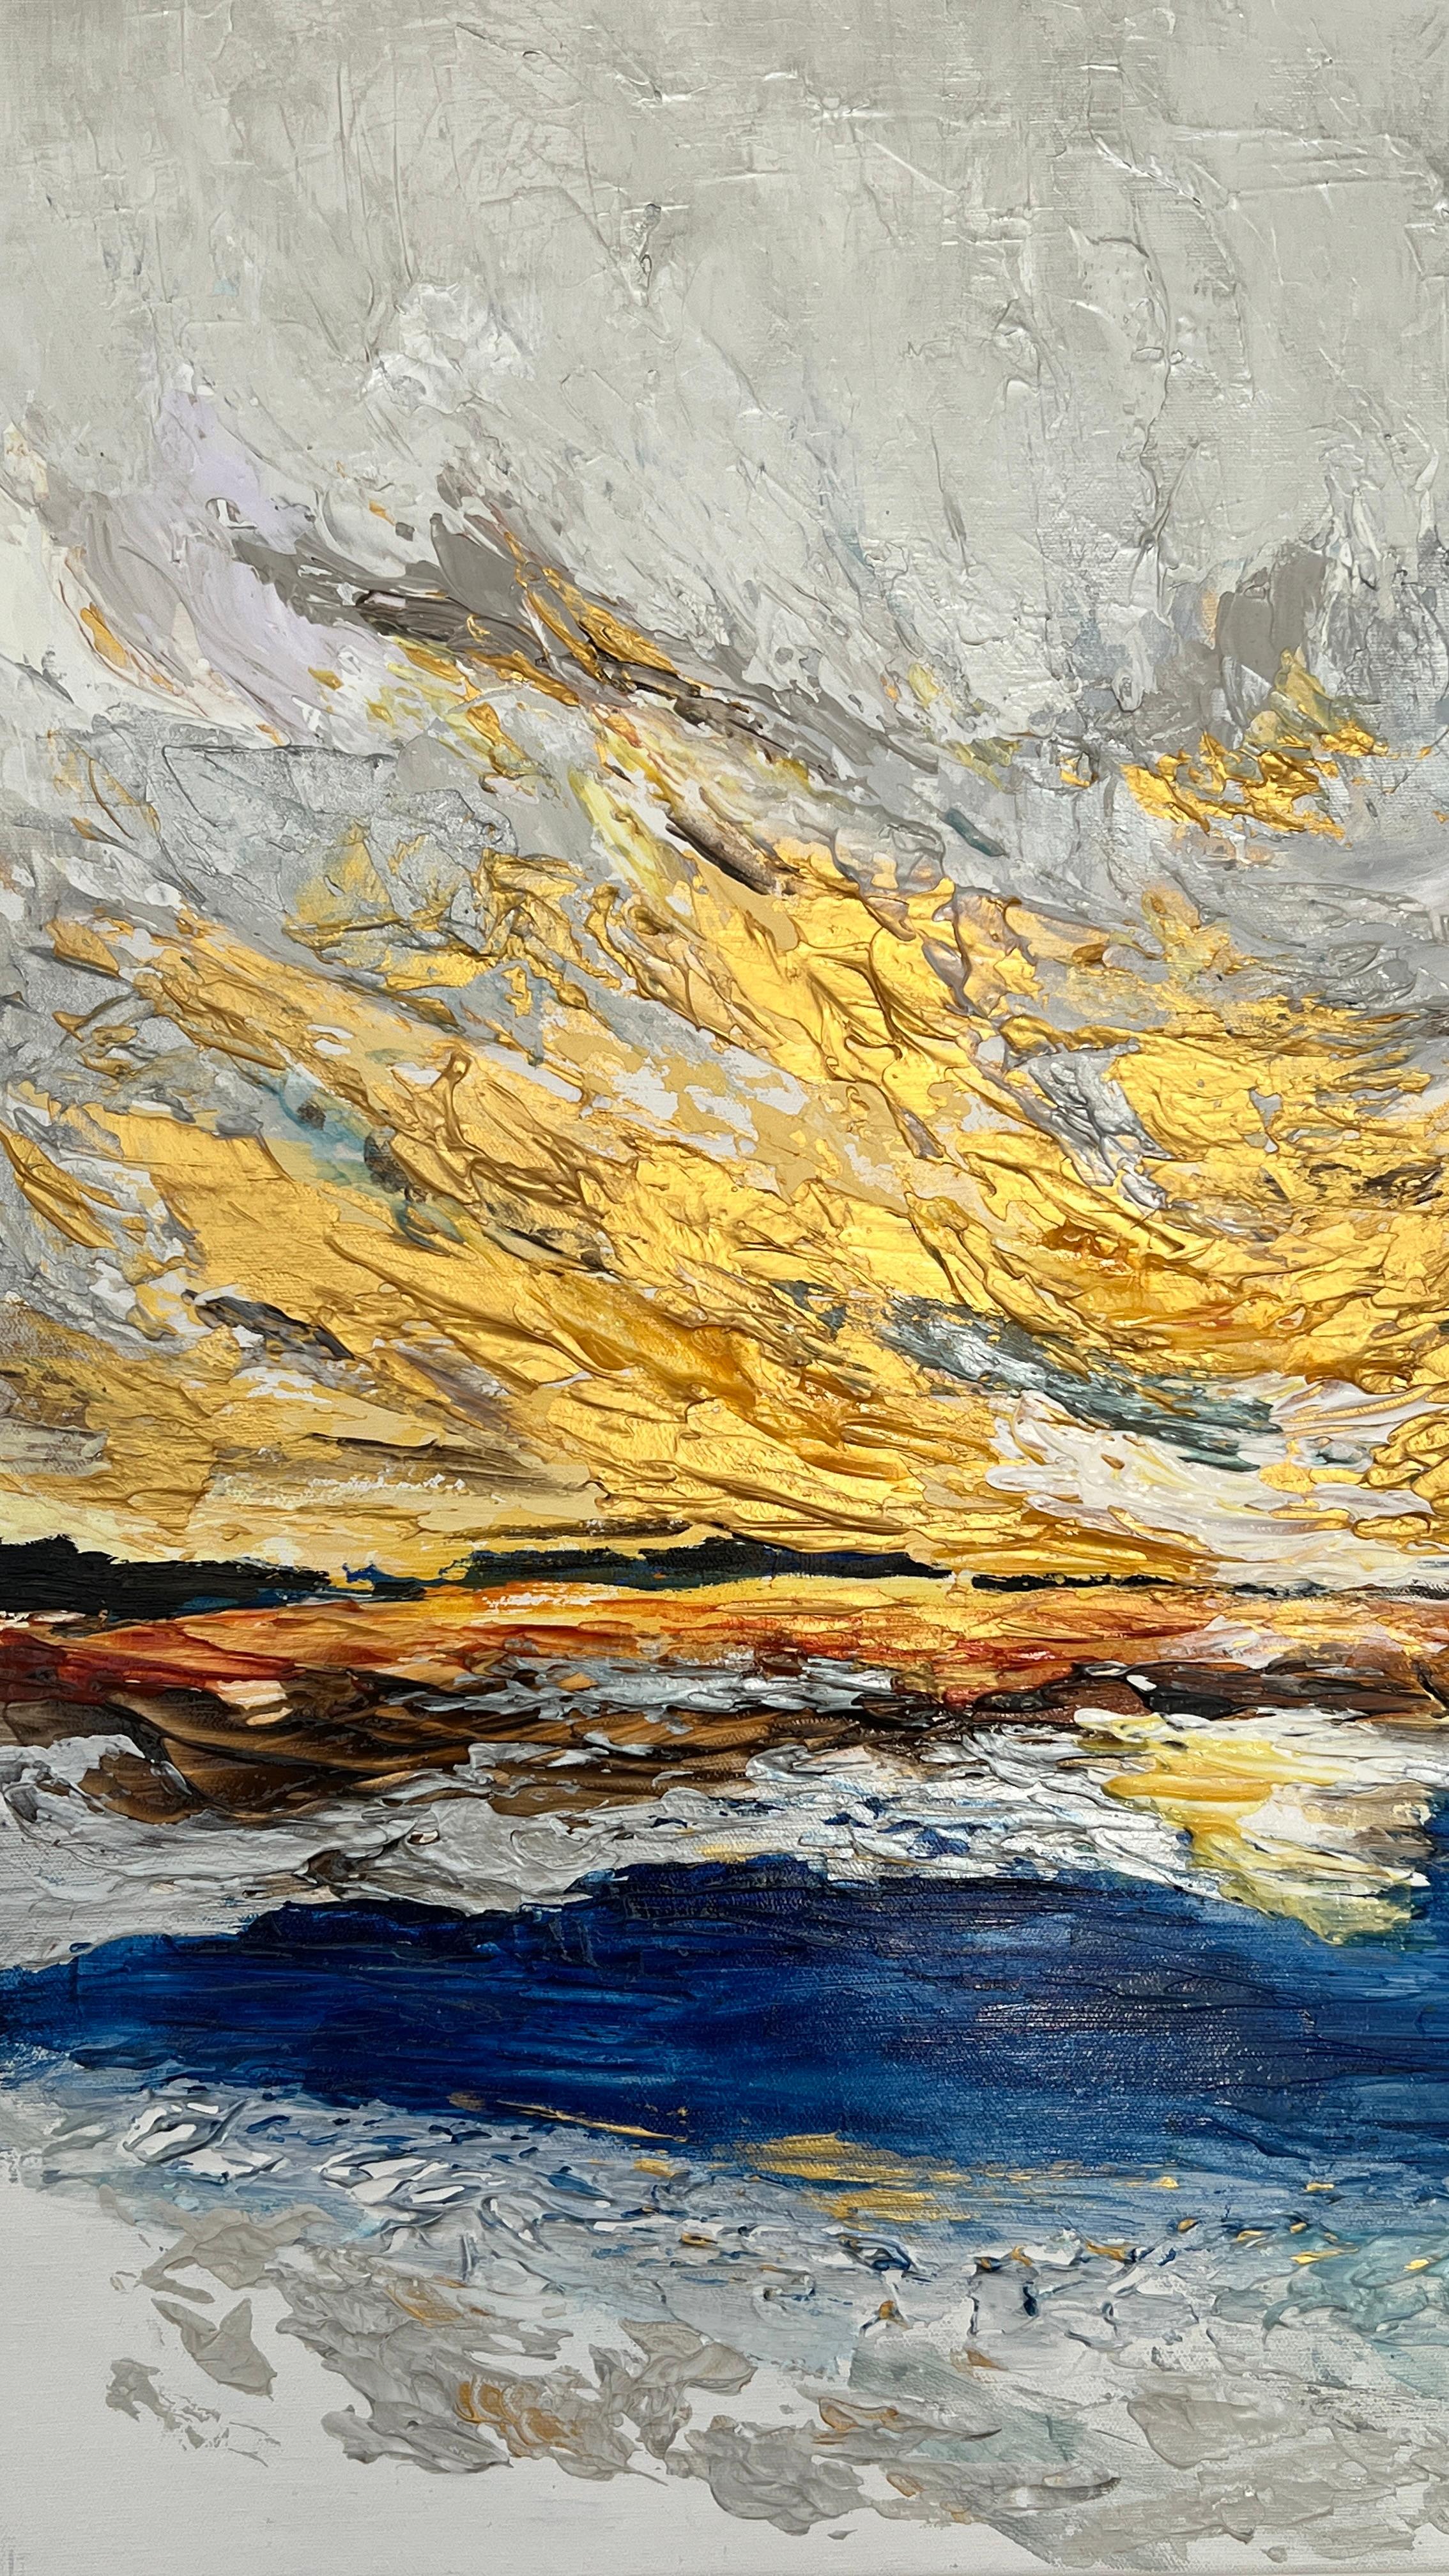 Sonnenuntergangsallegorie – Painting von Lana Ritter